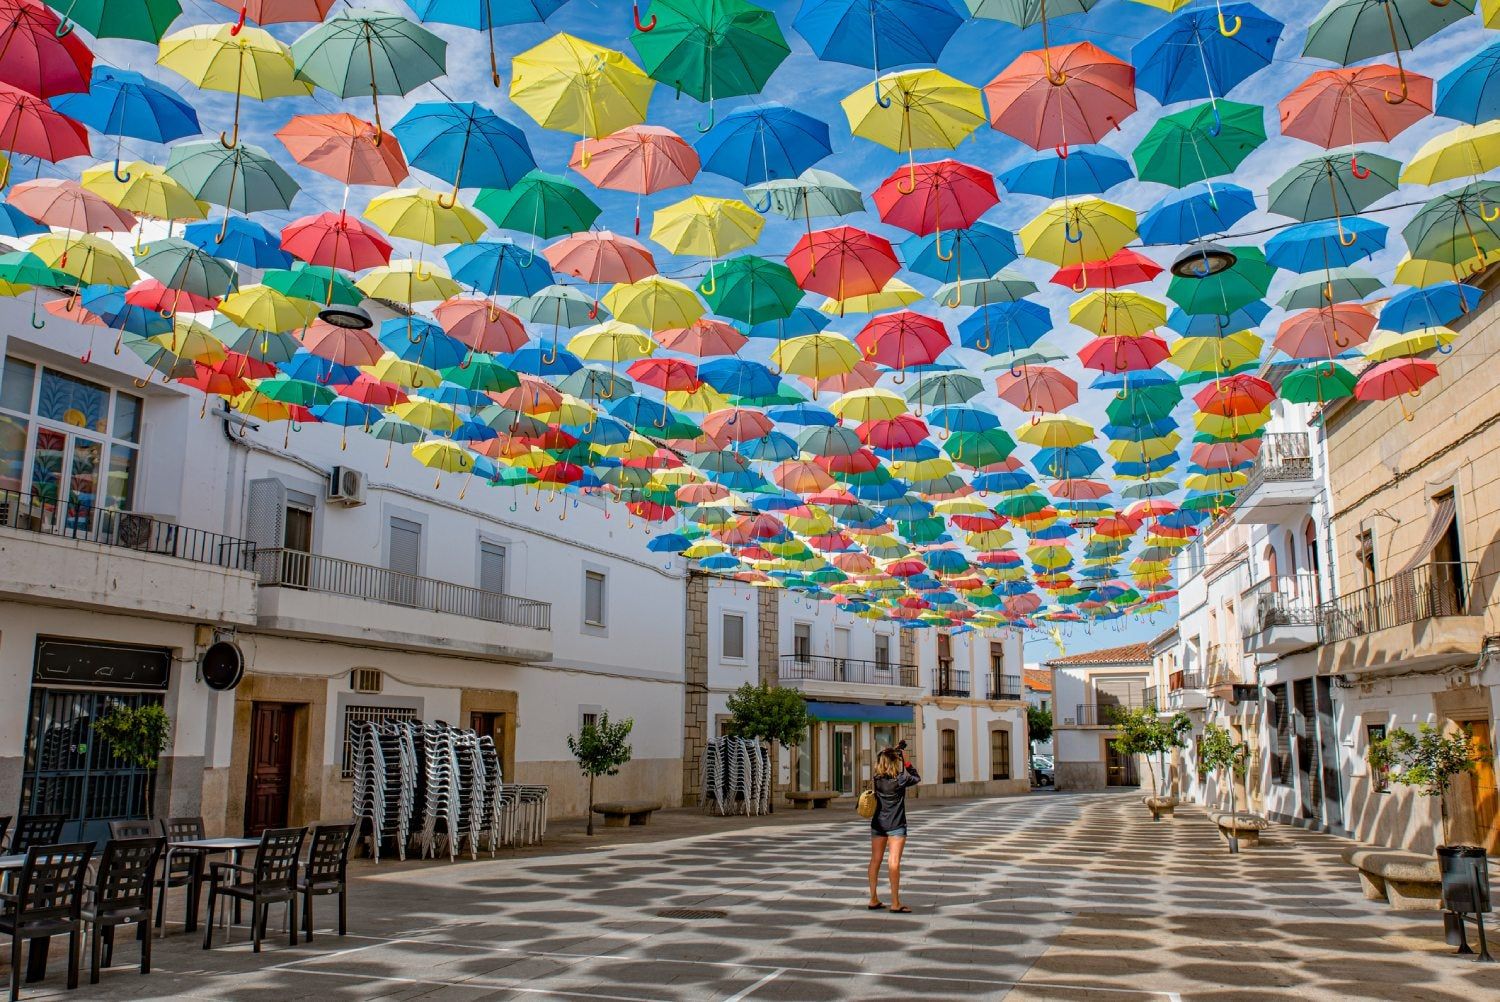 No dejes escapar julio sin visitar Águeda y sus miles de paraguas flotantes  - Viajar